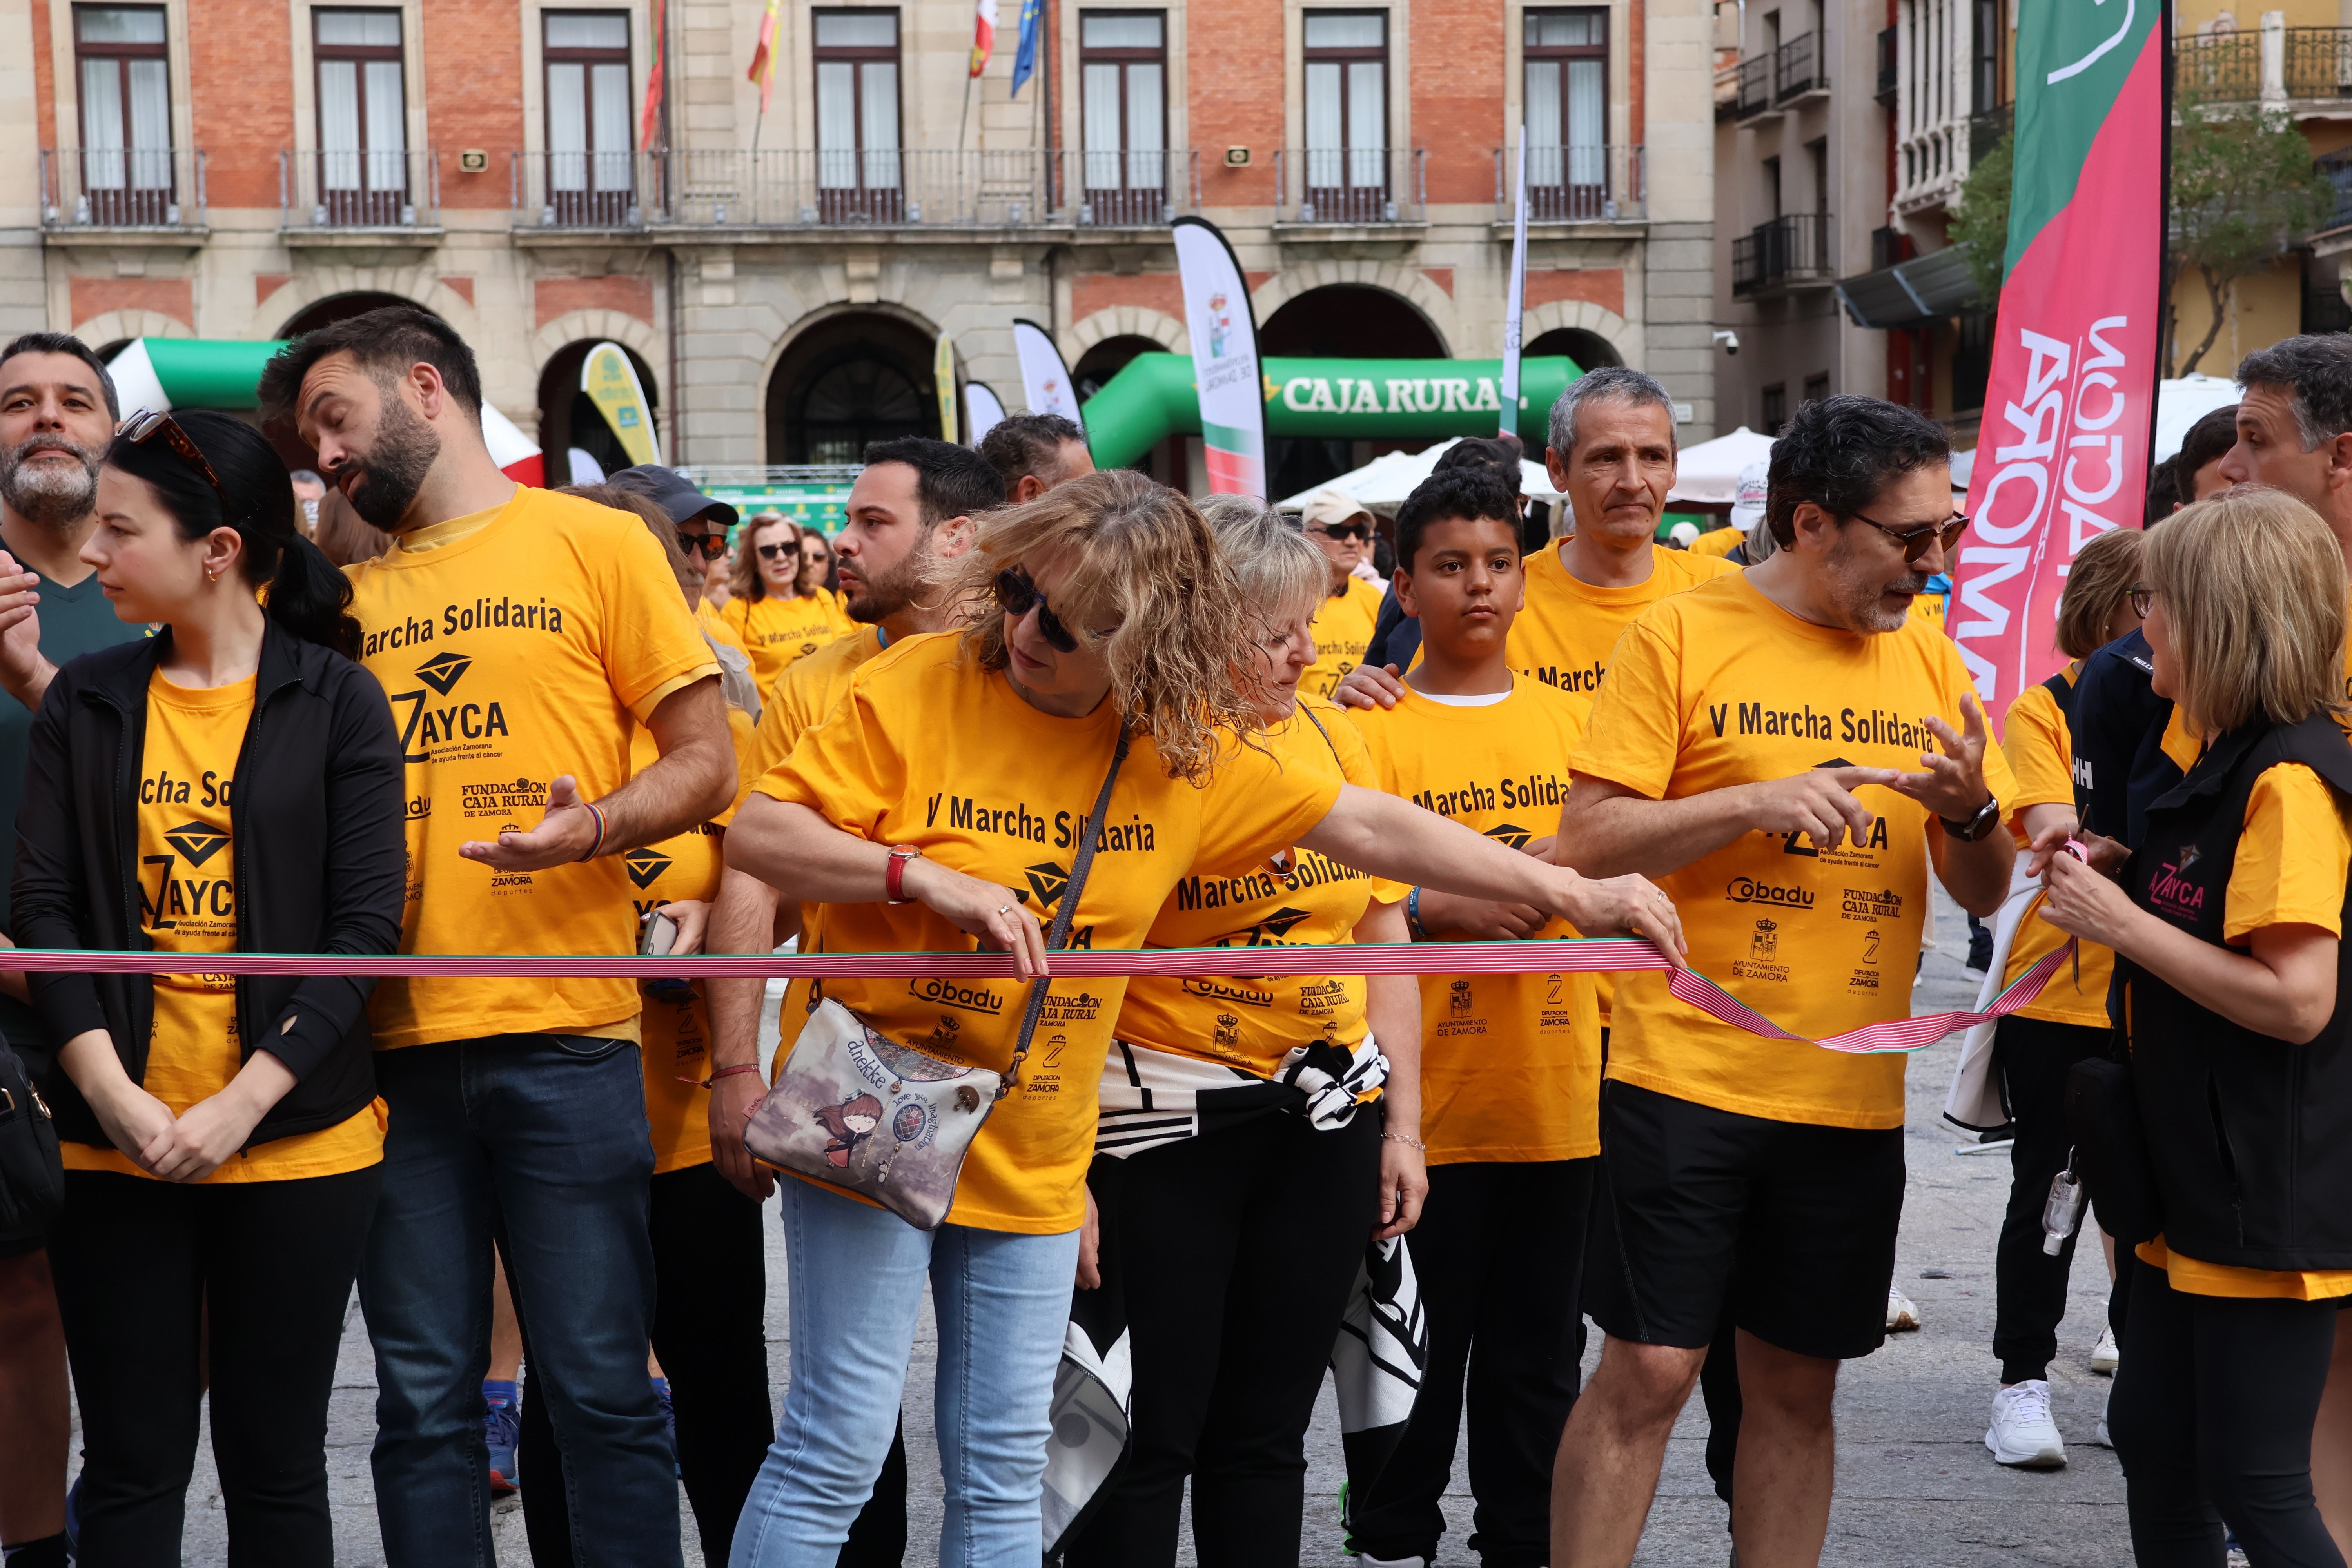 V Marcha Solidaria Azayca (9)